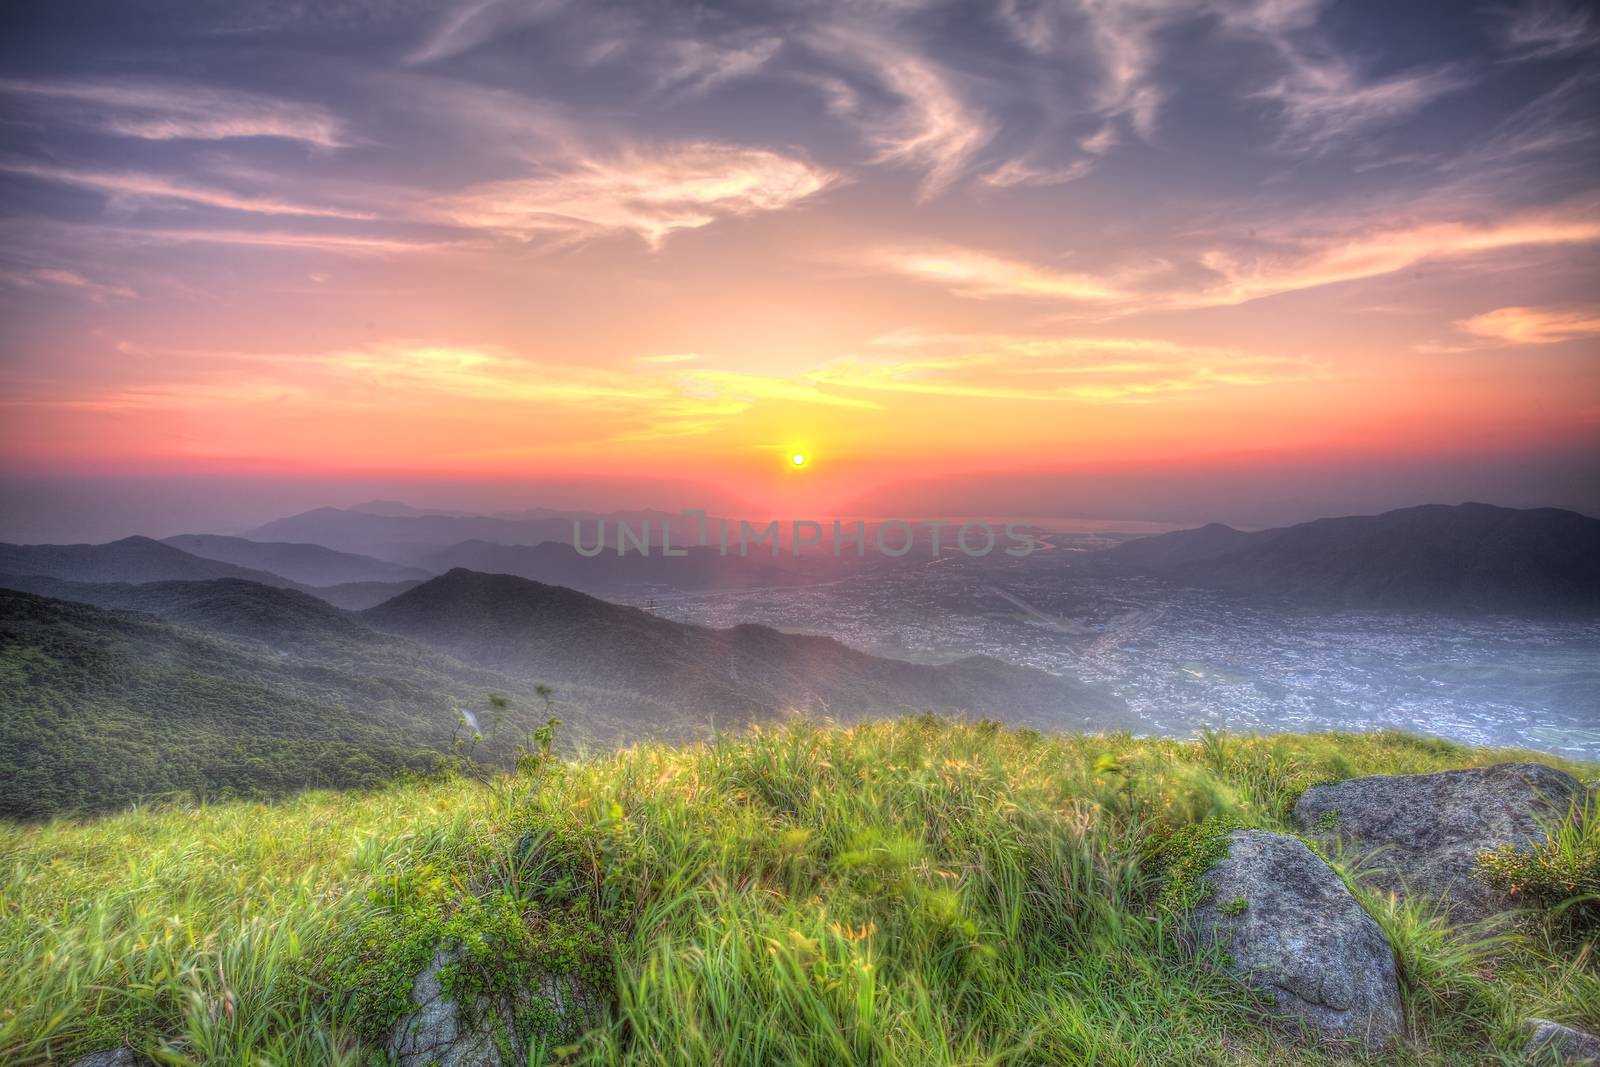 Sunset at Hong Kong at mountains, HDR image. by kawing921